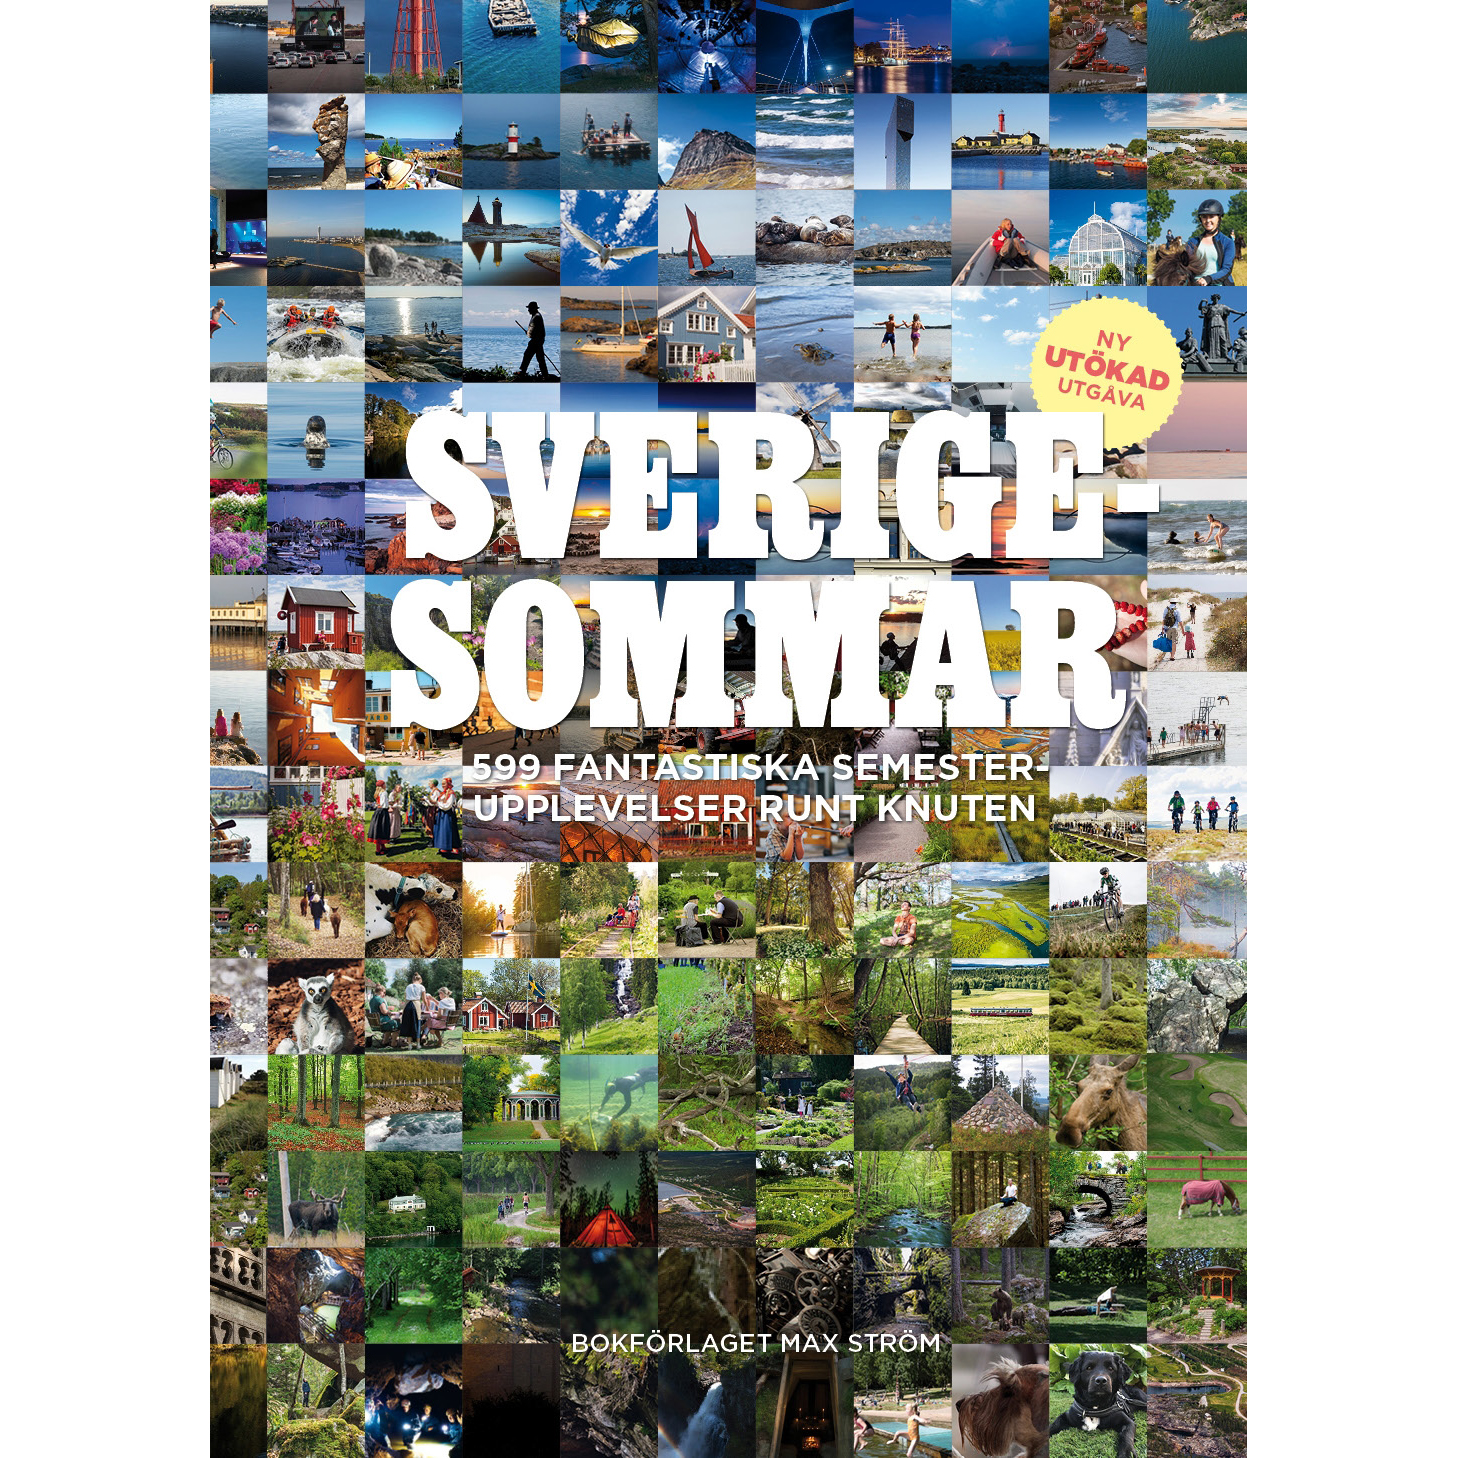 Sverigesommar semestertips bok